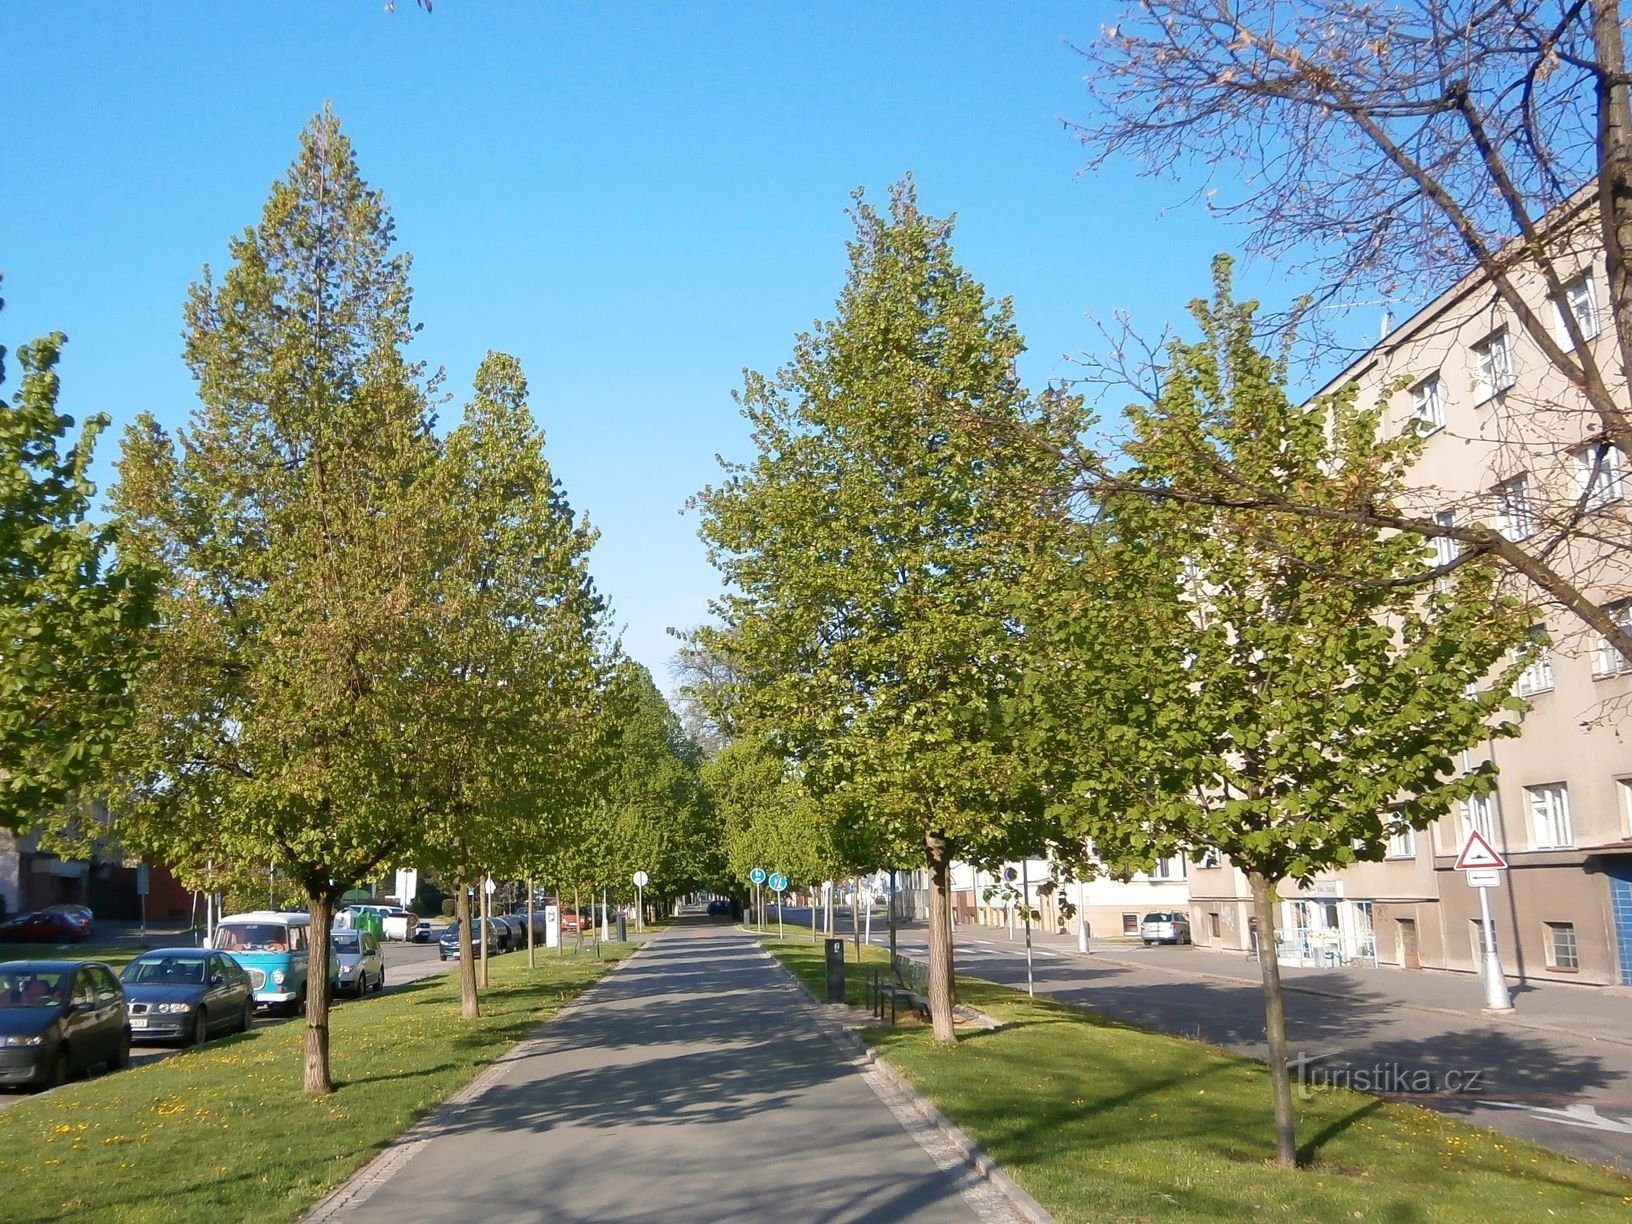 Línea de árboles Lipky (Hradec Králové, 20.4.2014/XNUMX/XNUMX)